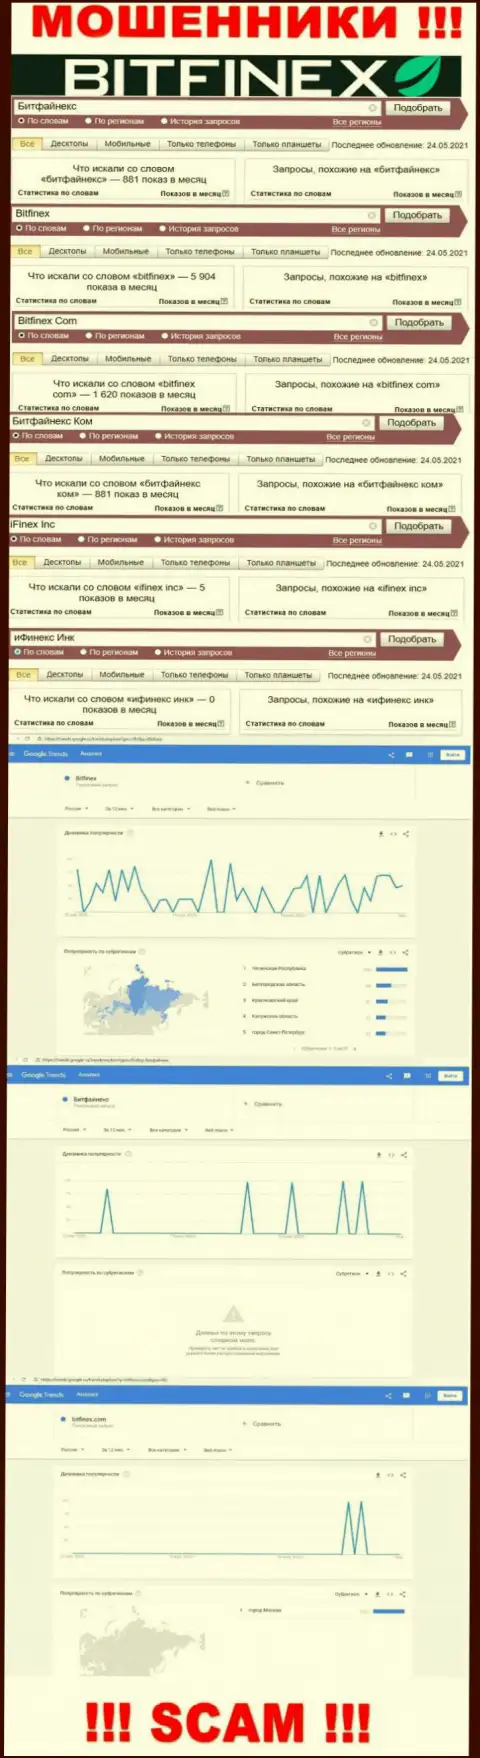 Количество online-запросов в поисковиках всемирной паутины по бренду шулеров Битфайнекс Ком